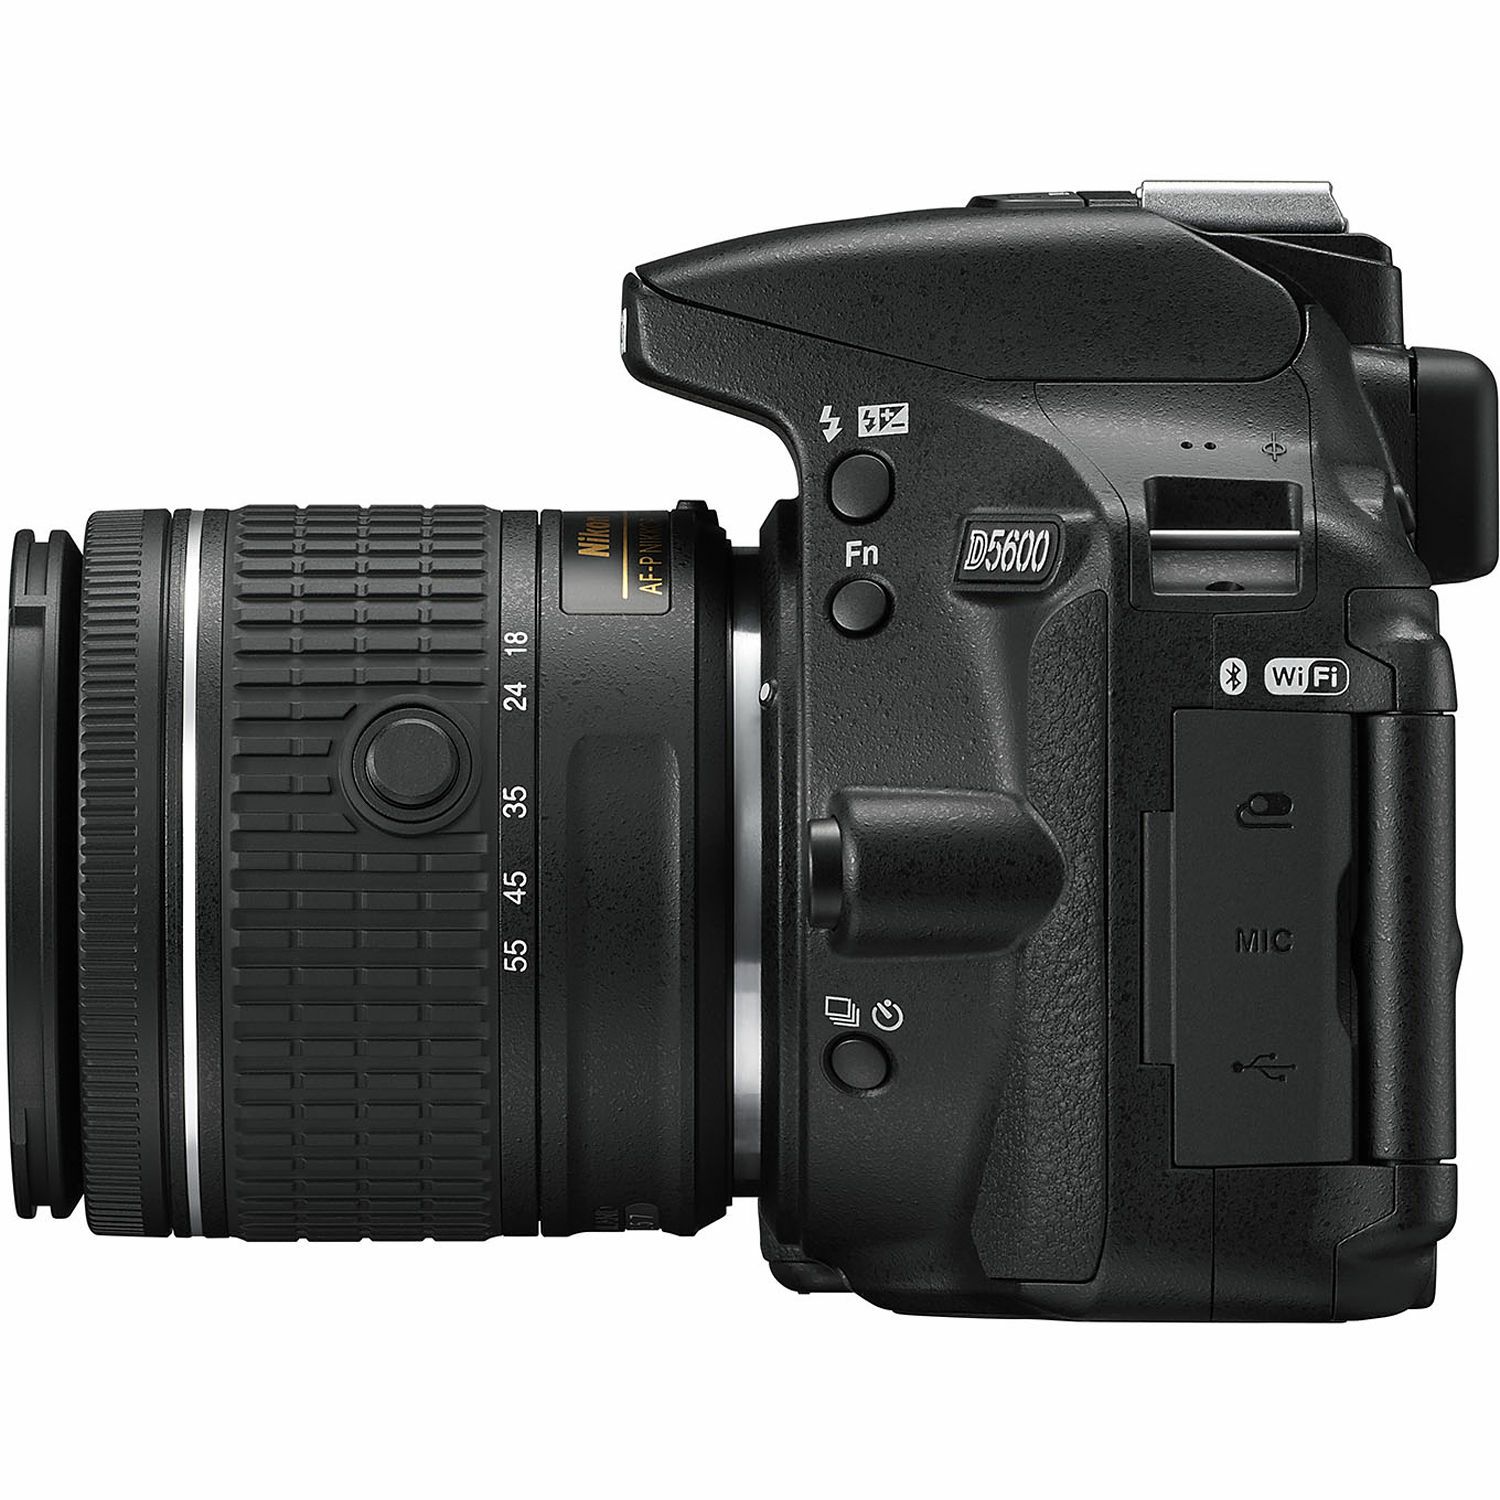 Nikon D5600 + AF-P 18-55 VR + AF-S 55-200 VR II DX KIT DSLR Digitalni fotoaparat s dva objektiva 18-55mm f/3.5-5.6 i 55-200mm (VBA500K001-1)